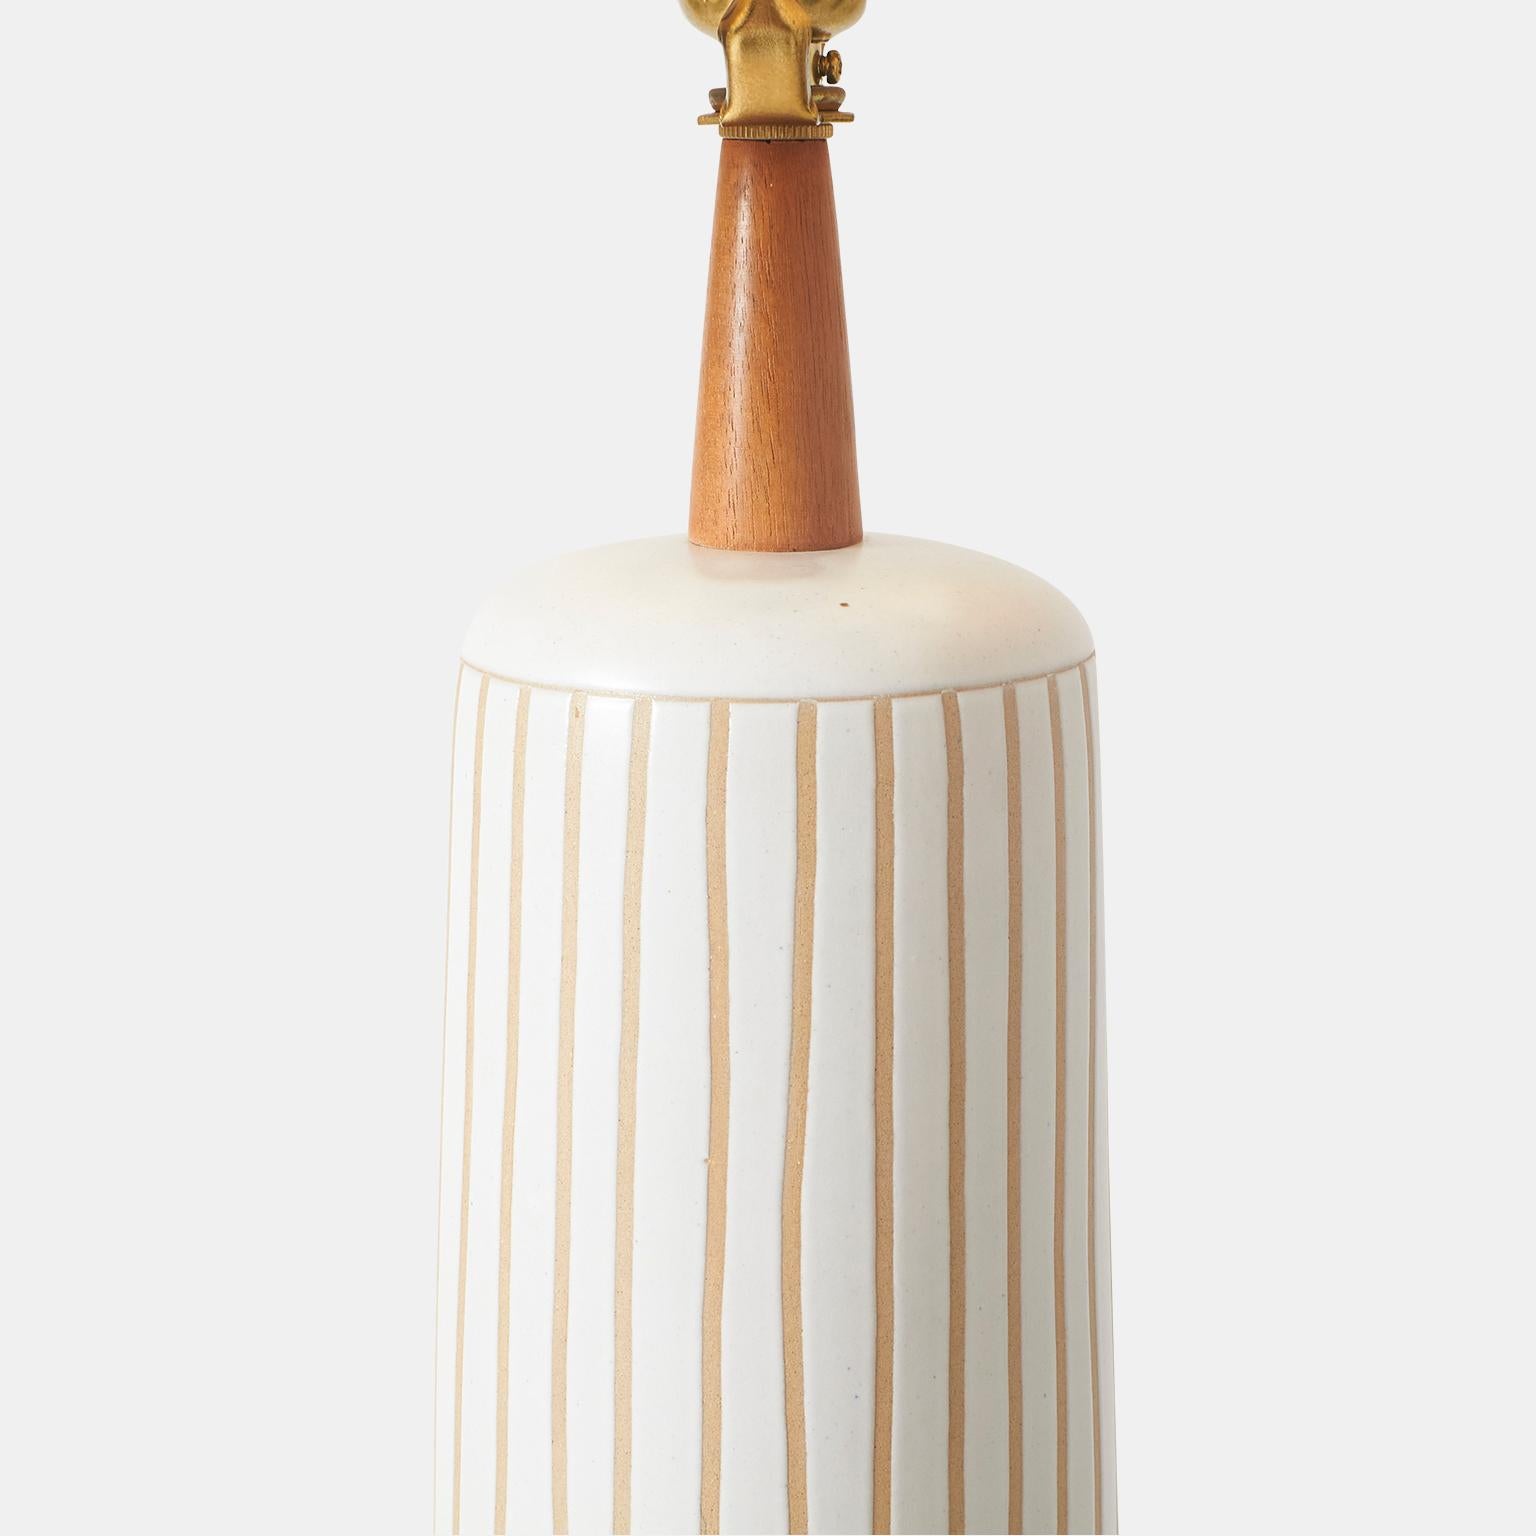 American Matte White & Tan Stoneware Table Lamp by Gordon & Jane Martz For Sale